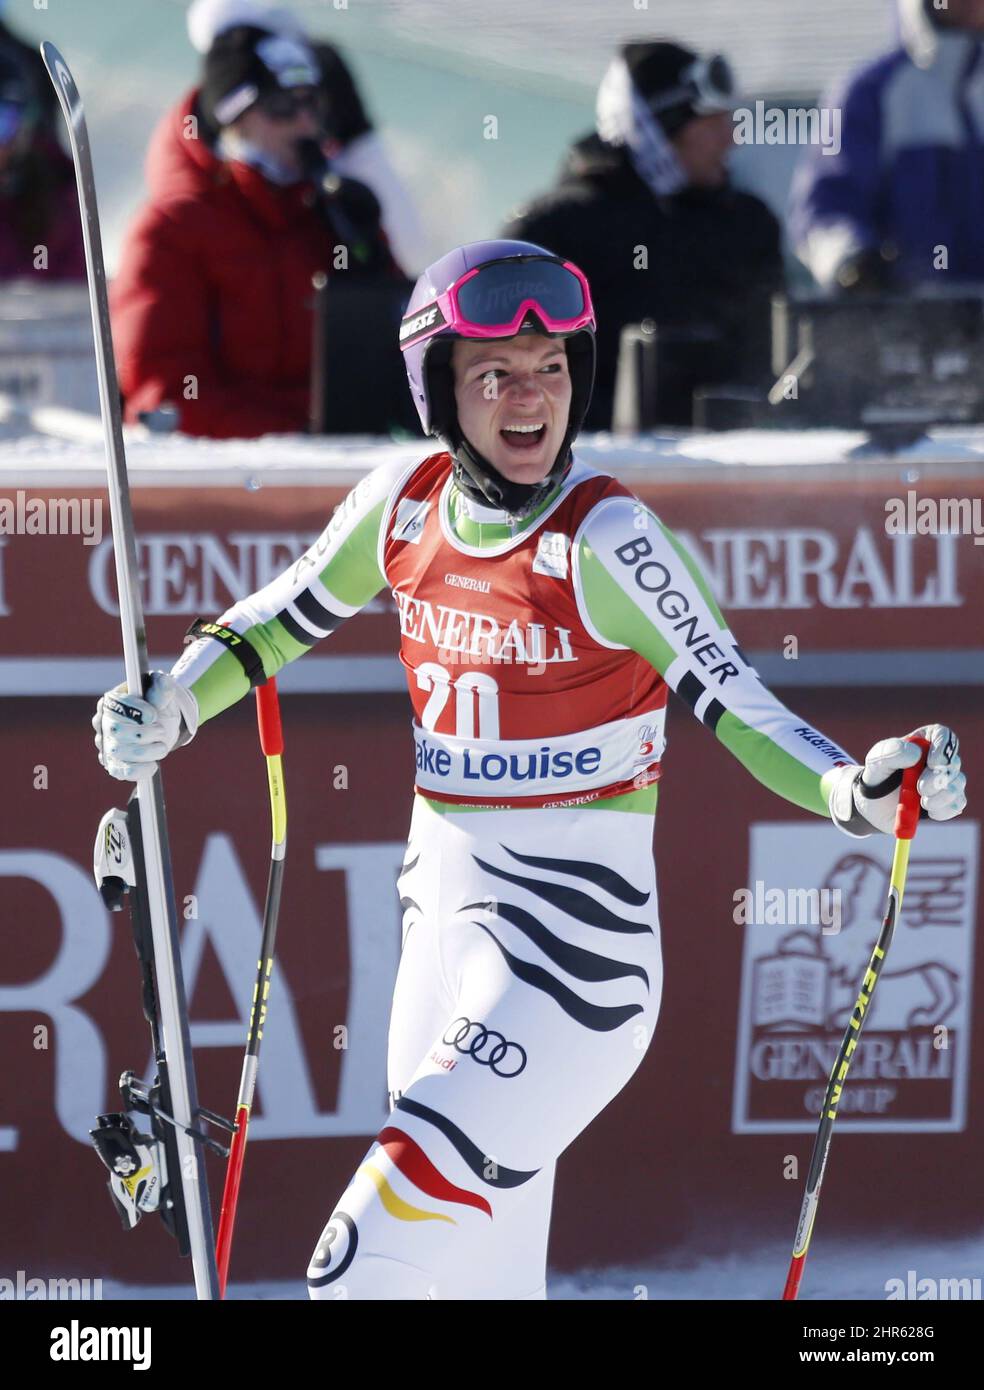 Maria Hoefl-Riesch, d'Allemagne, réagit dans la zone d'arrivée après sa course à la coupe du monde féminine de ski alpin à Lake Louise, en Alberta, le vendredi 6 décembre 2013. LA PRESSE CANADIENNE/Jeff McIntosh Banque D'Images